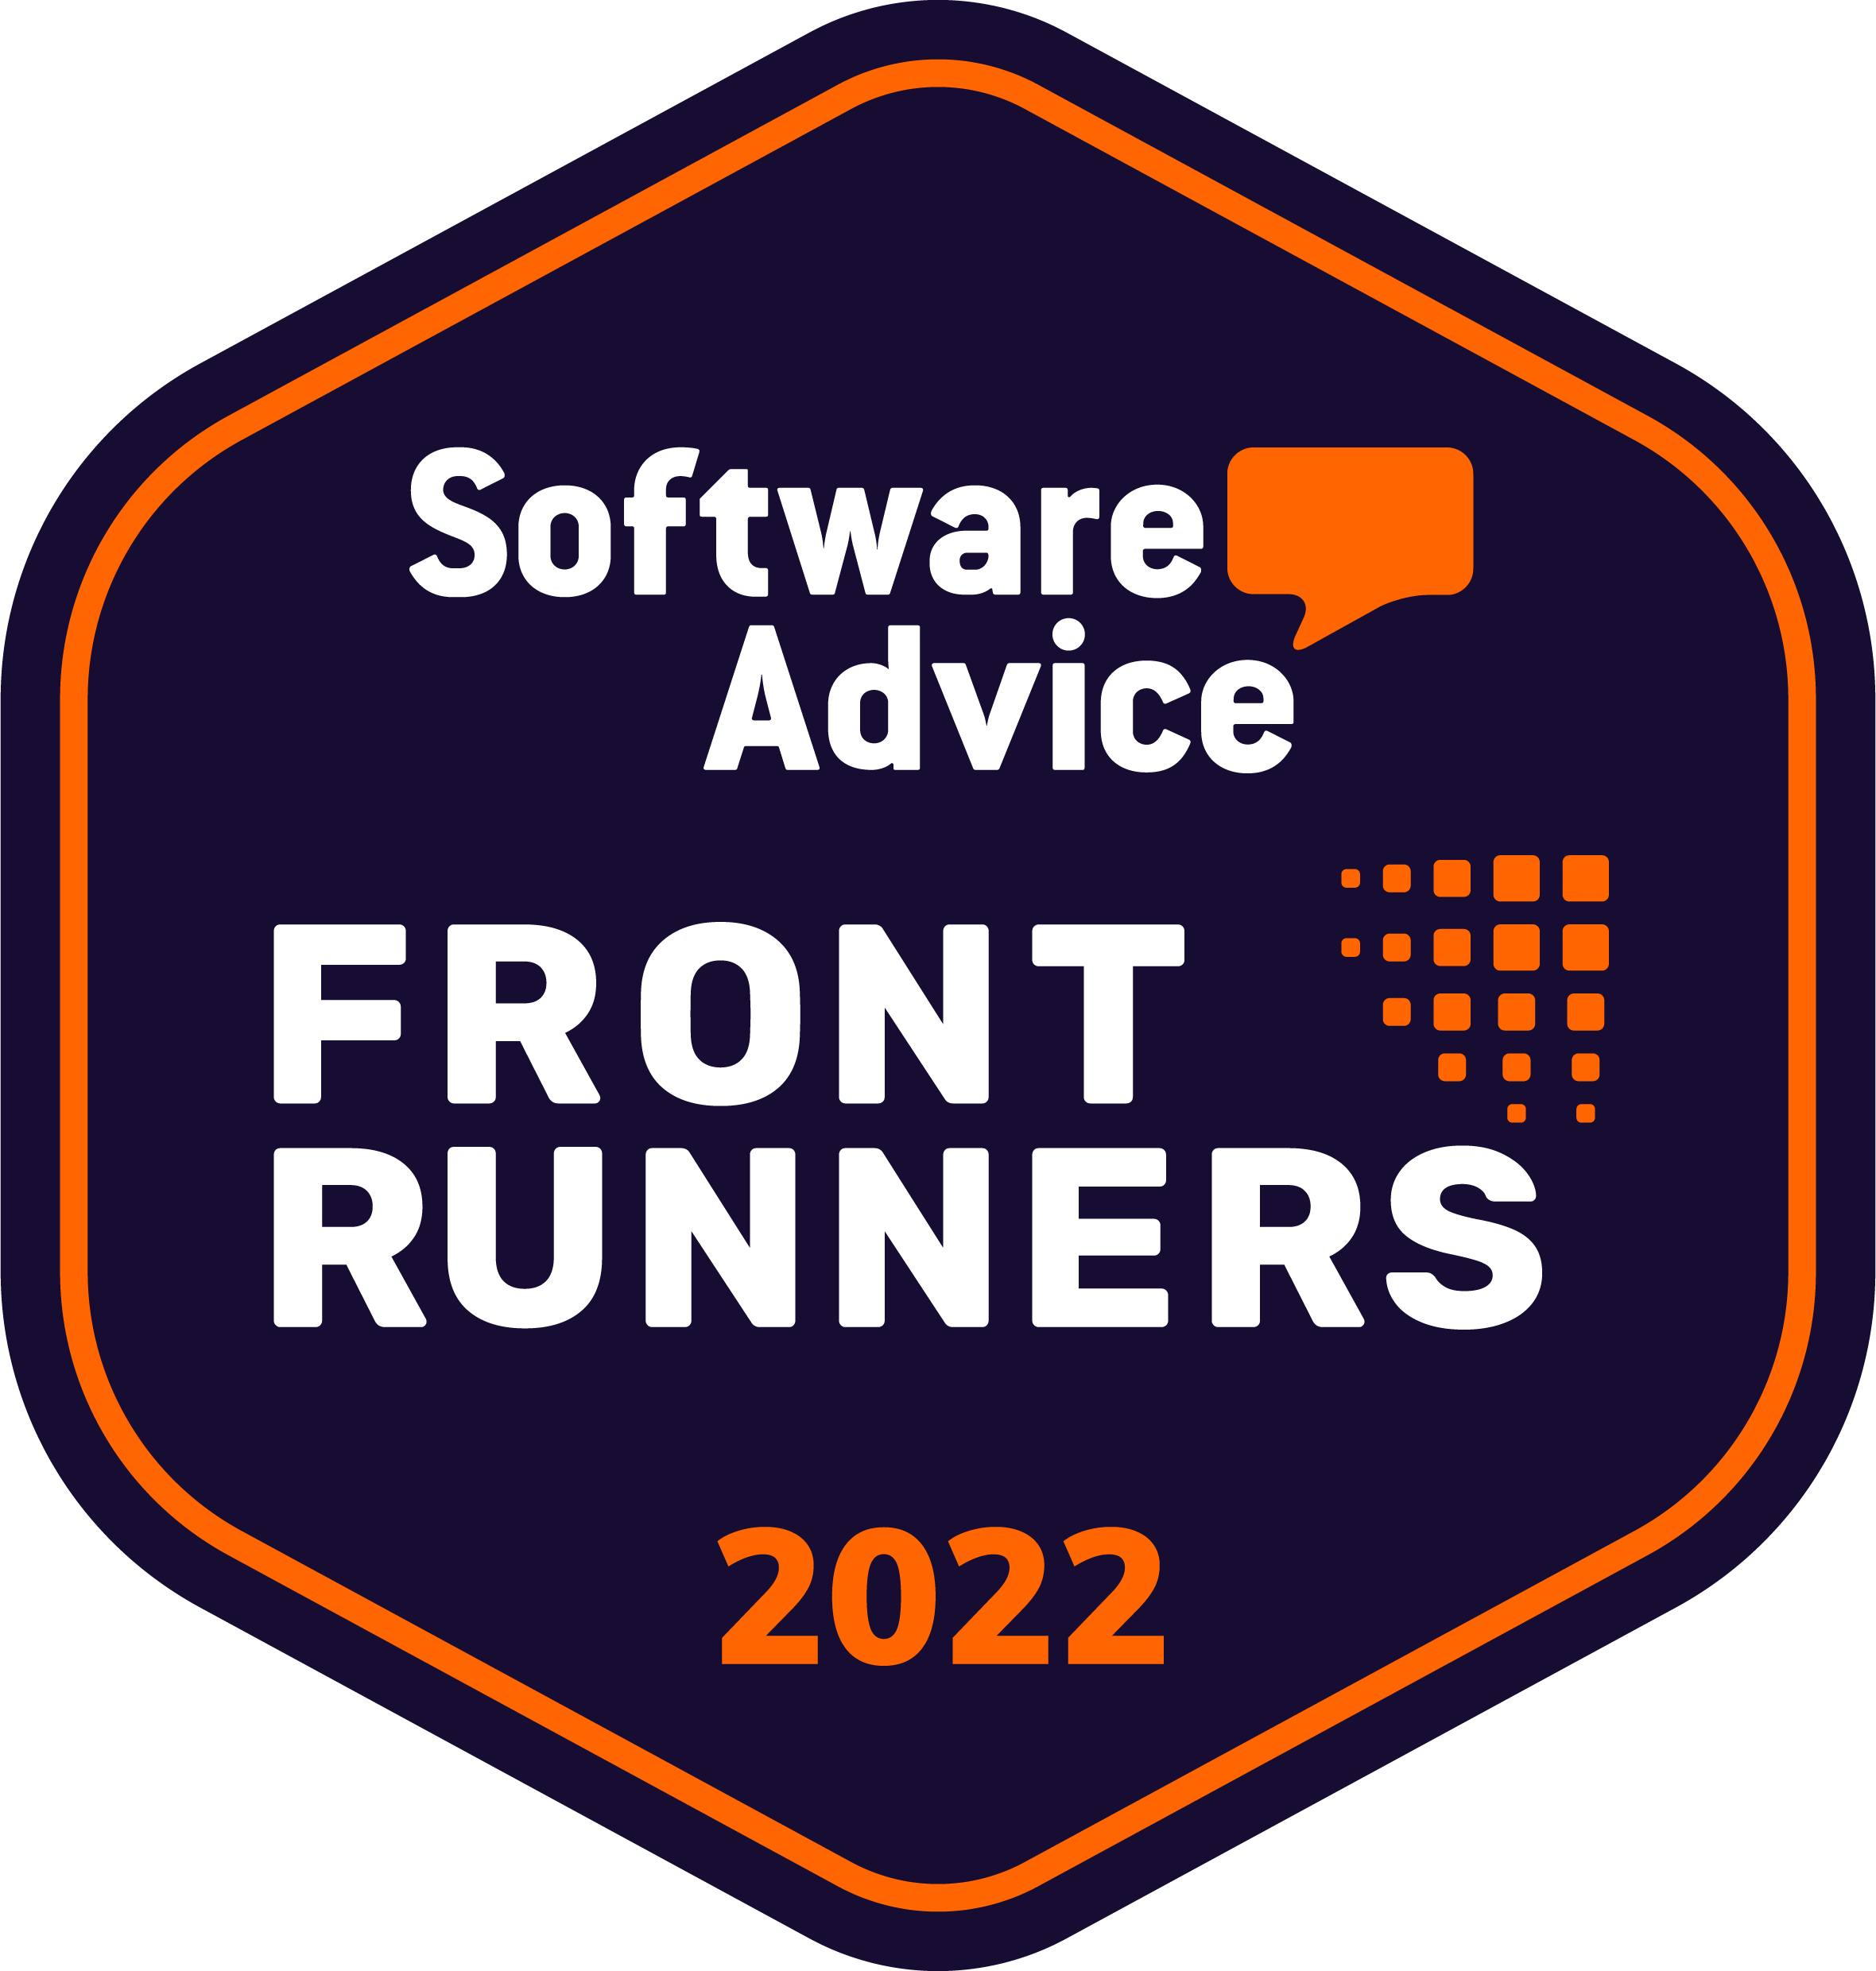 SoftwareAdvice Front Runners 2022